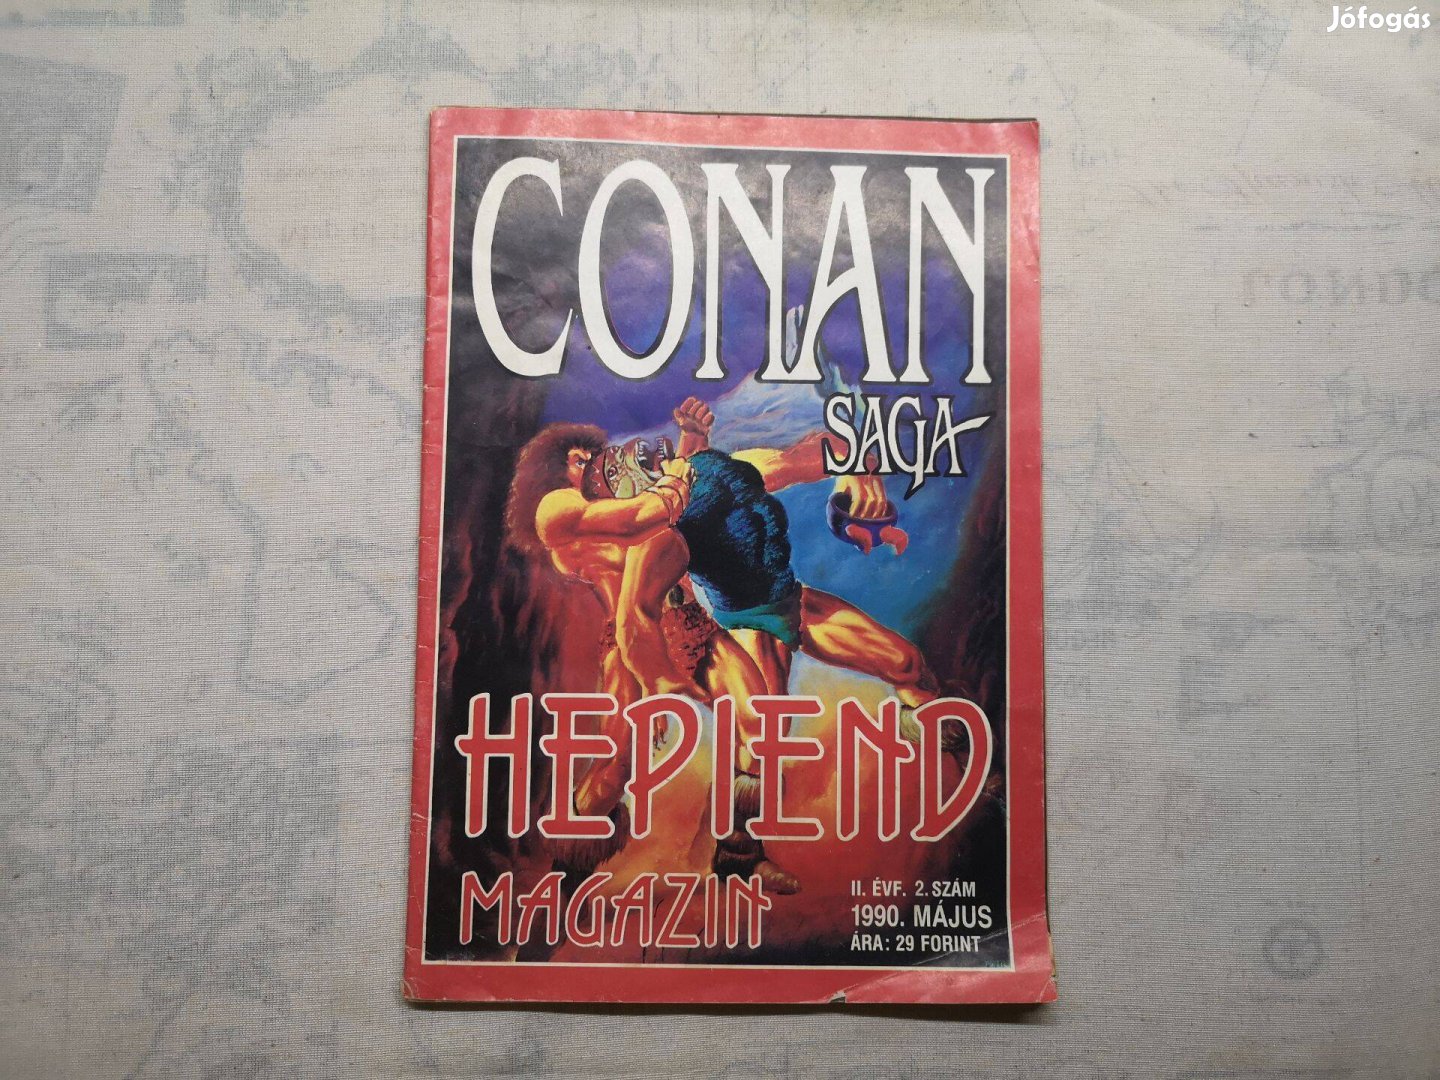 Hepiend magazin - Conan saga (1990. május)